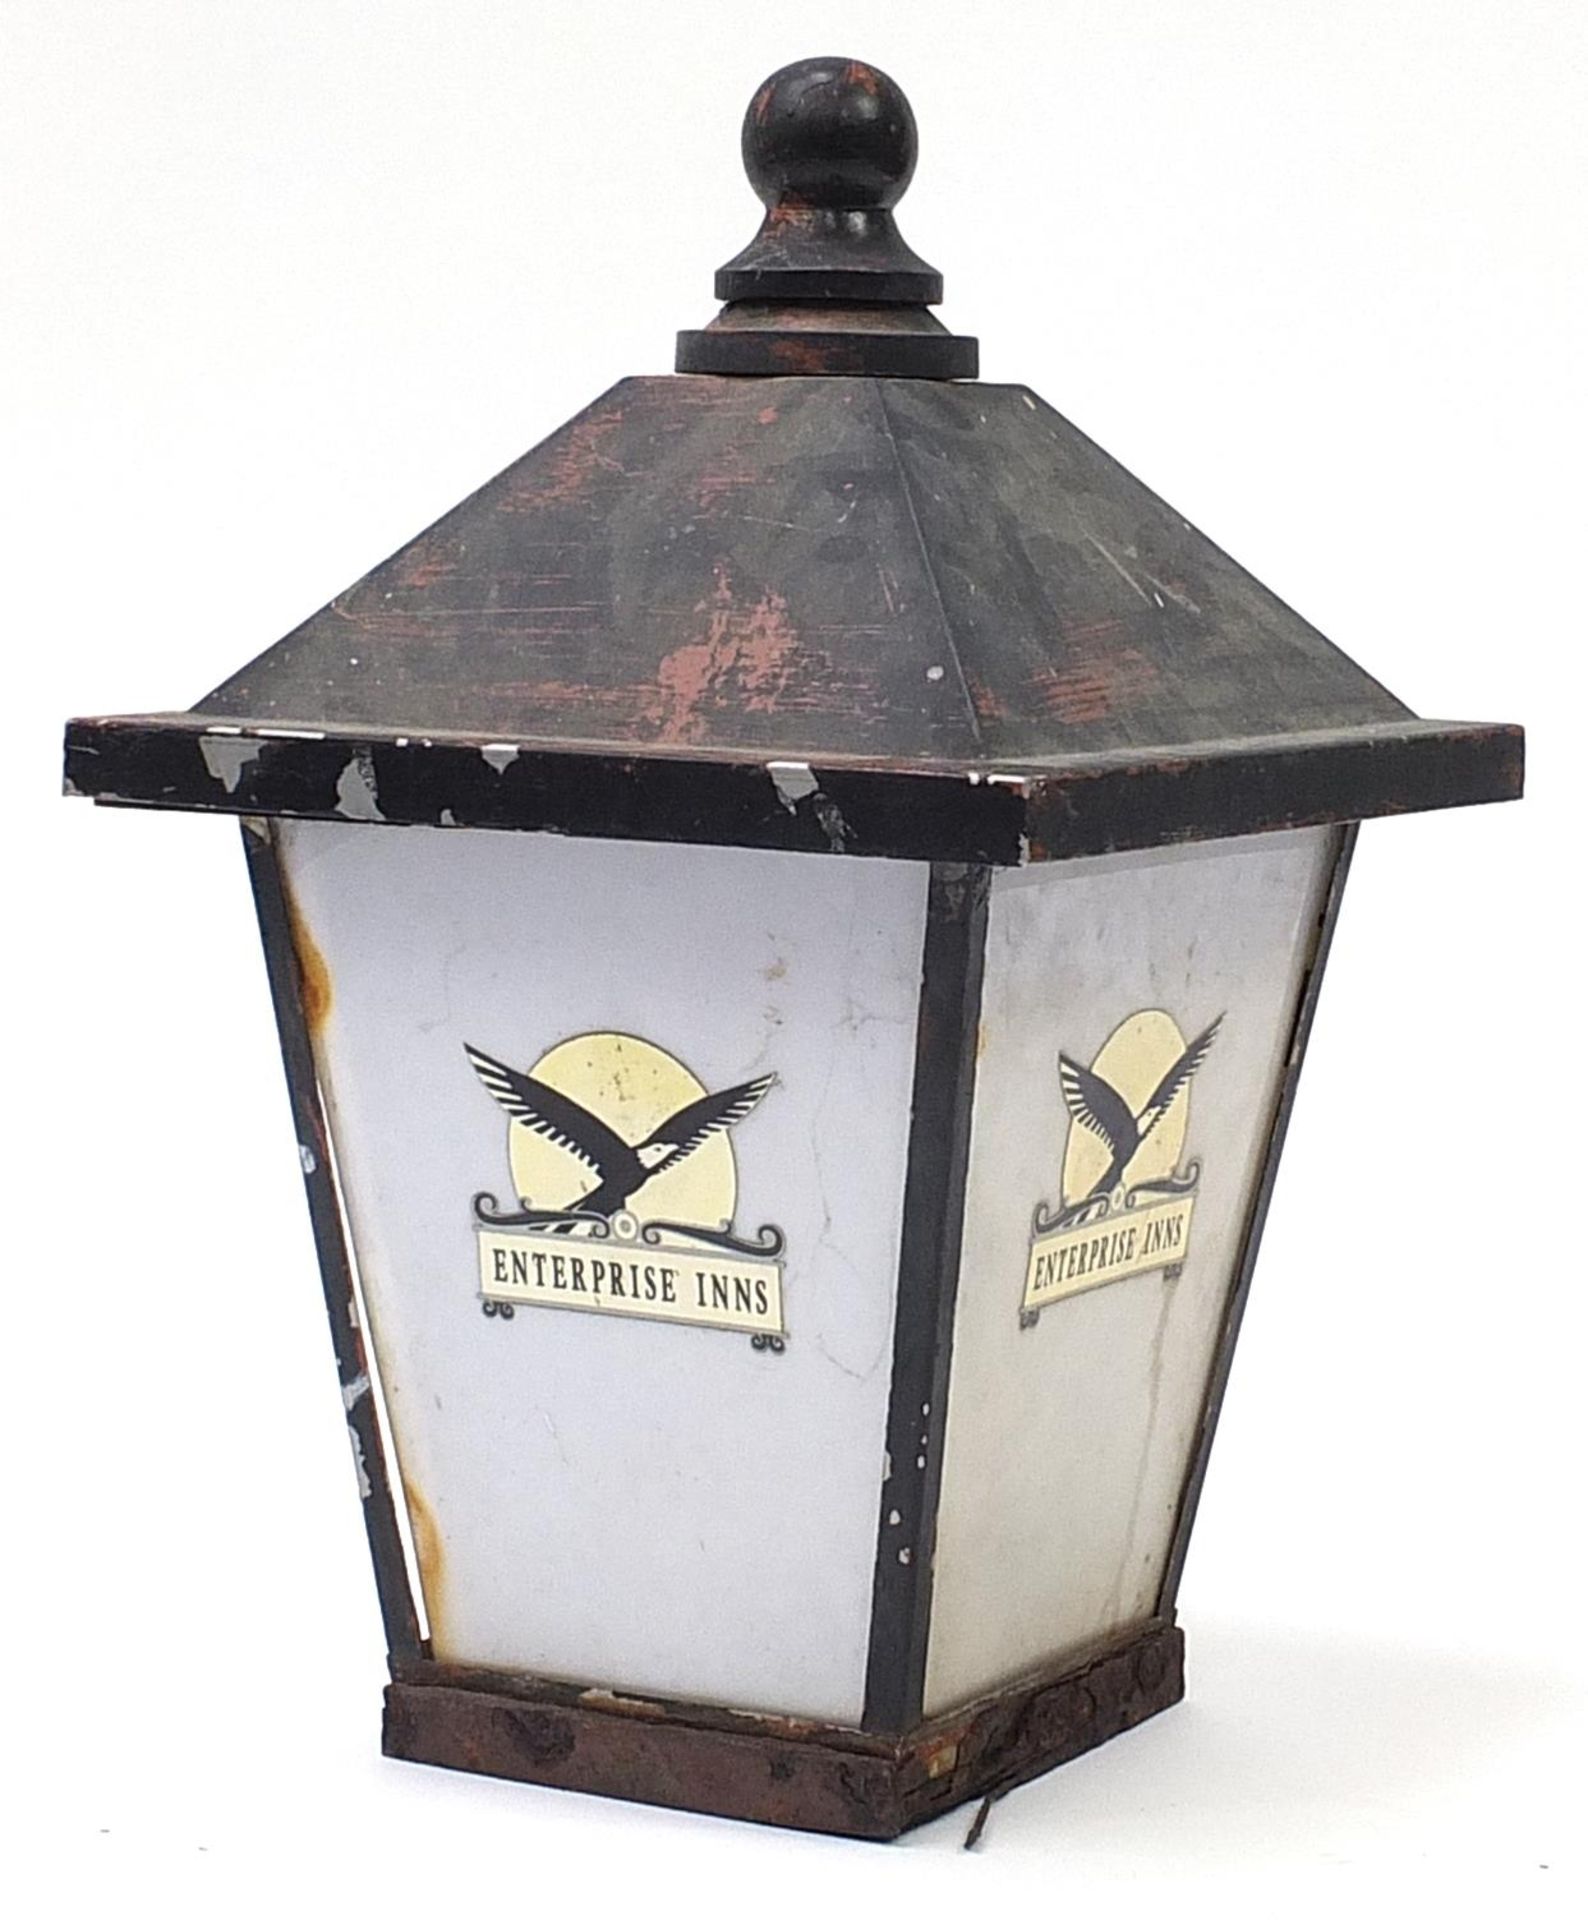 Vintage black painted metal Enterprise Inns advertising street lantern, 68cm high